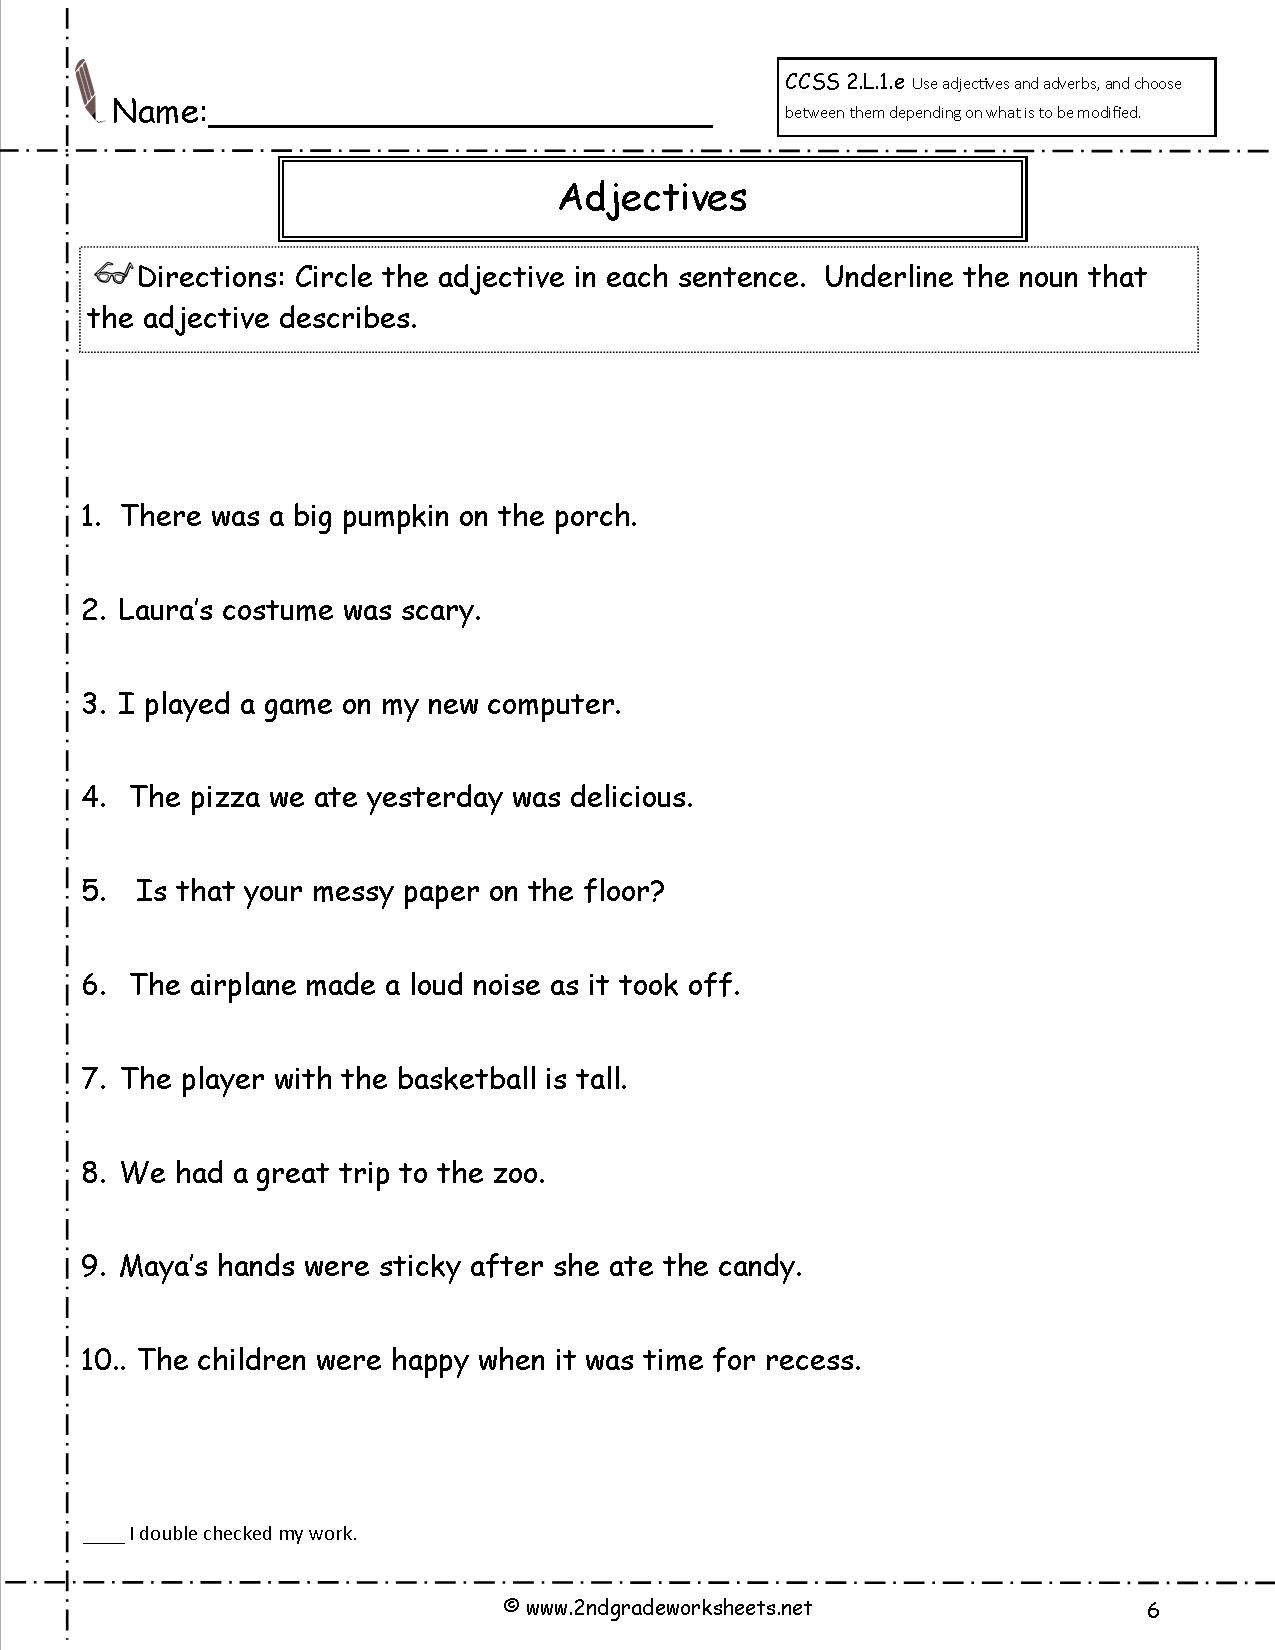 Class 7 Adjectives Worksheet